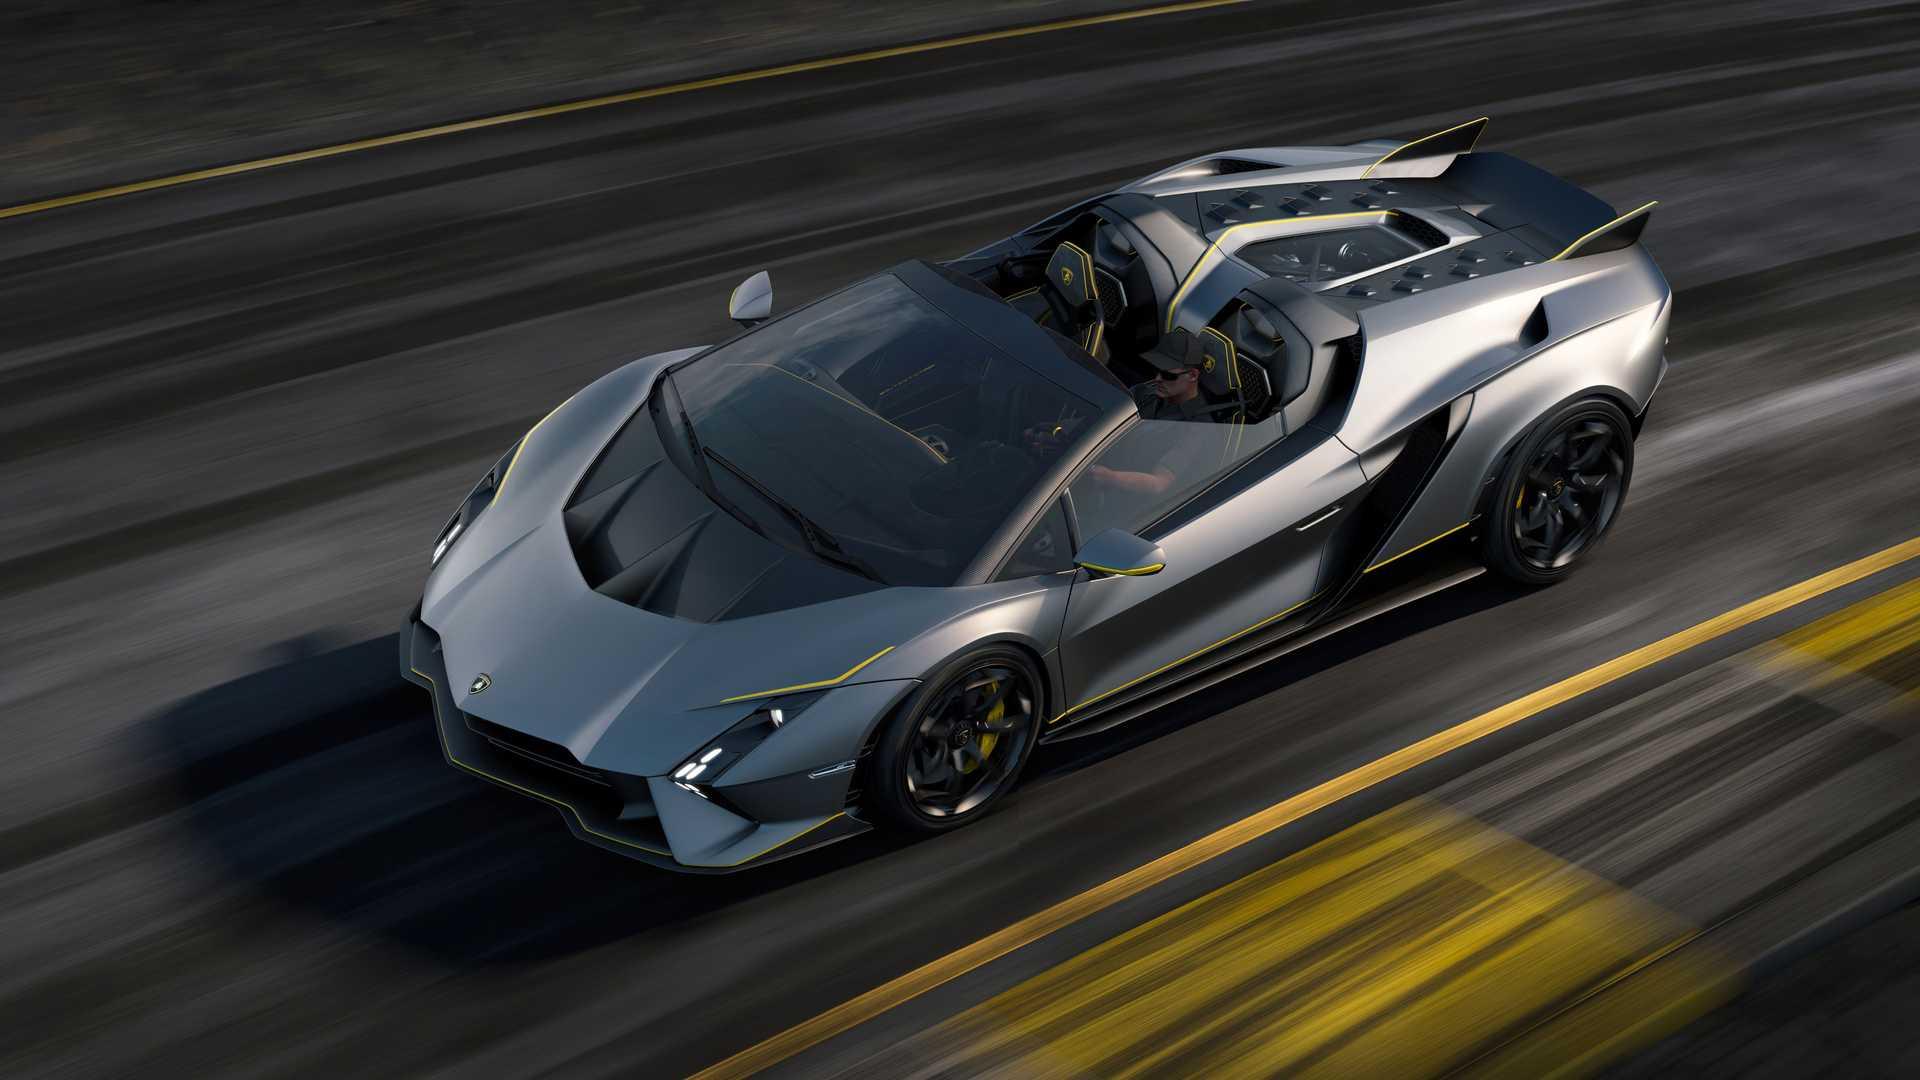 Lamborghini Invencible und Autentica: V12-Einzelstücke zum Abschied